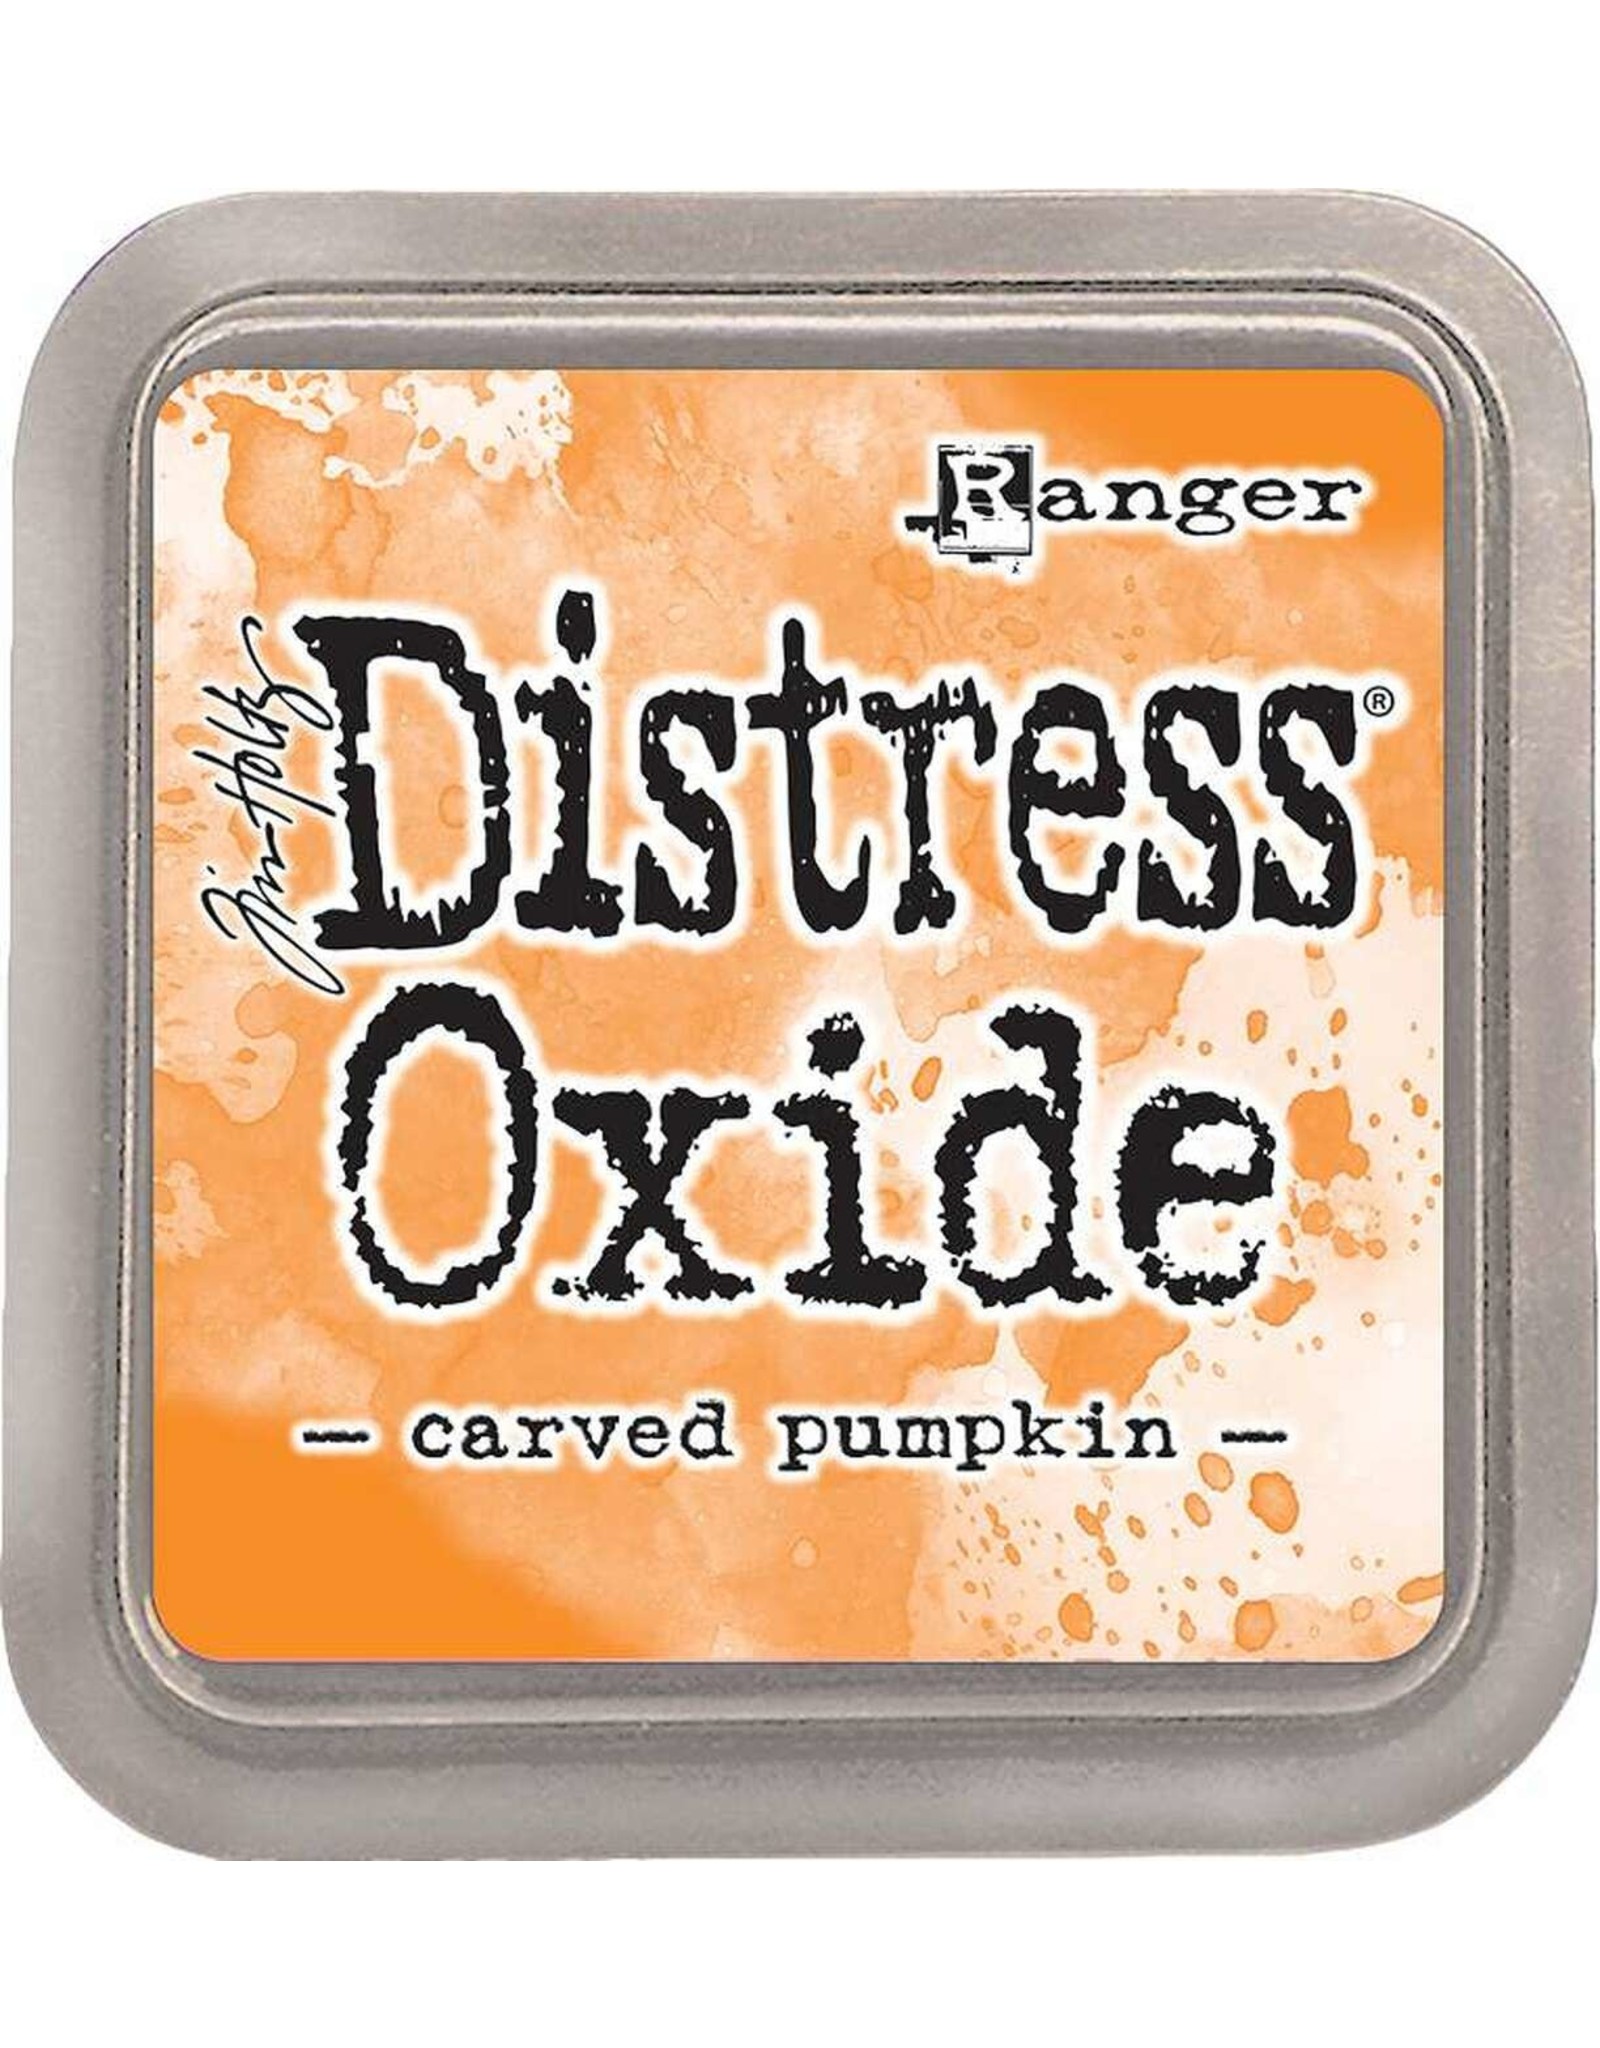 Tim Holtz - Ranger Distress Oxide Carved Pumpkin